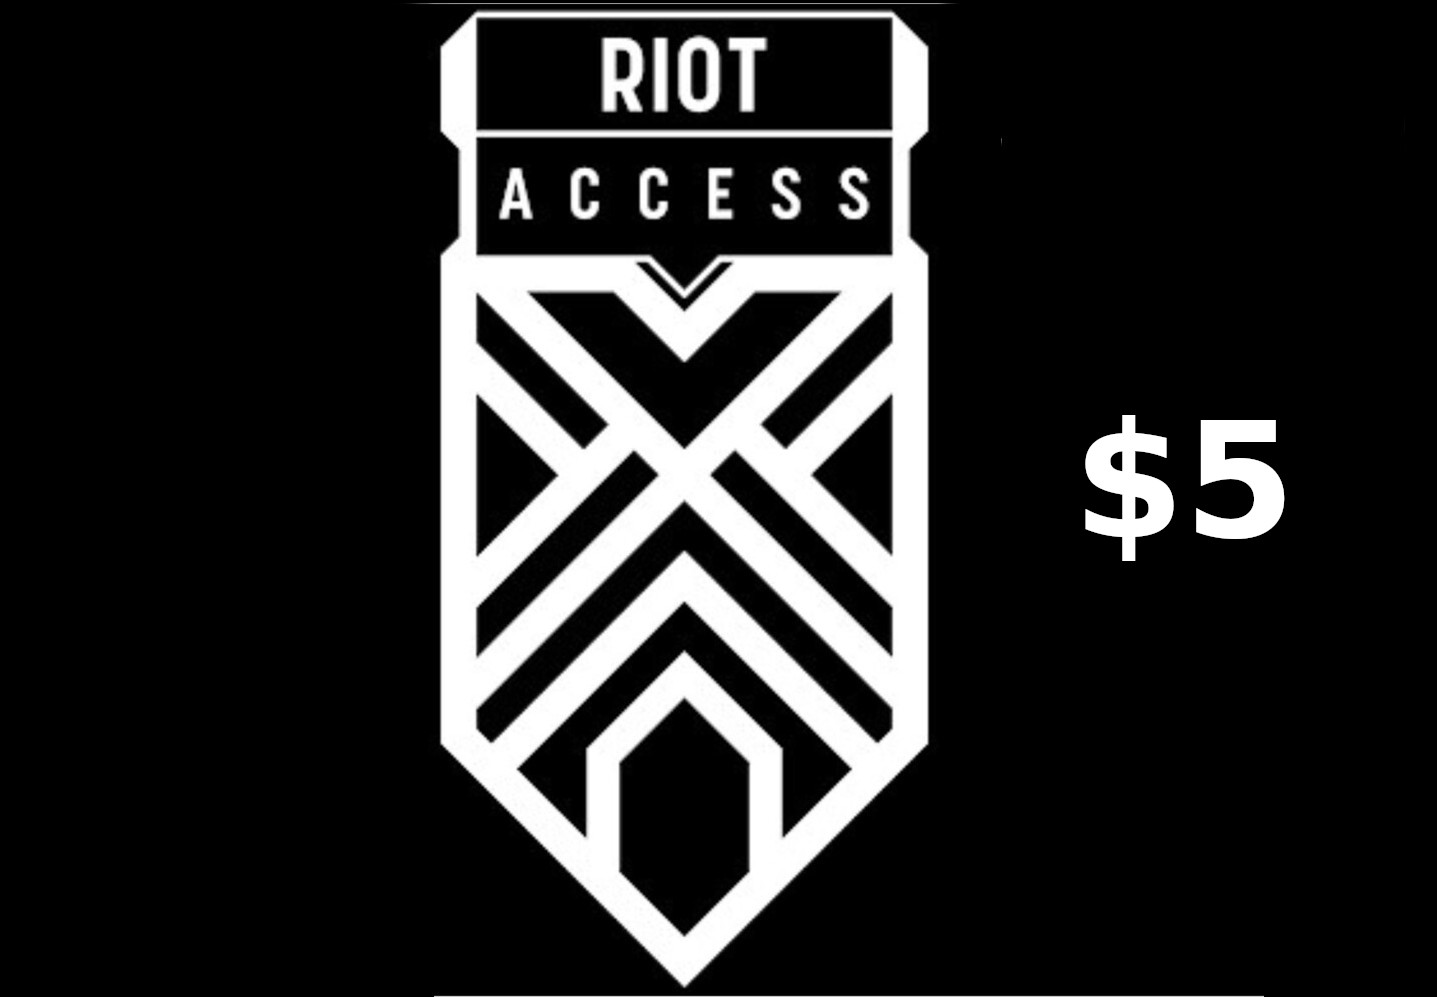 Riot Access $5 Code LATAM